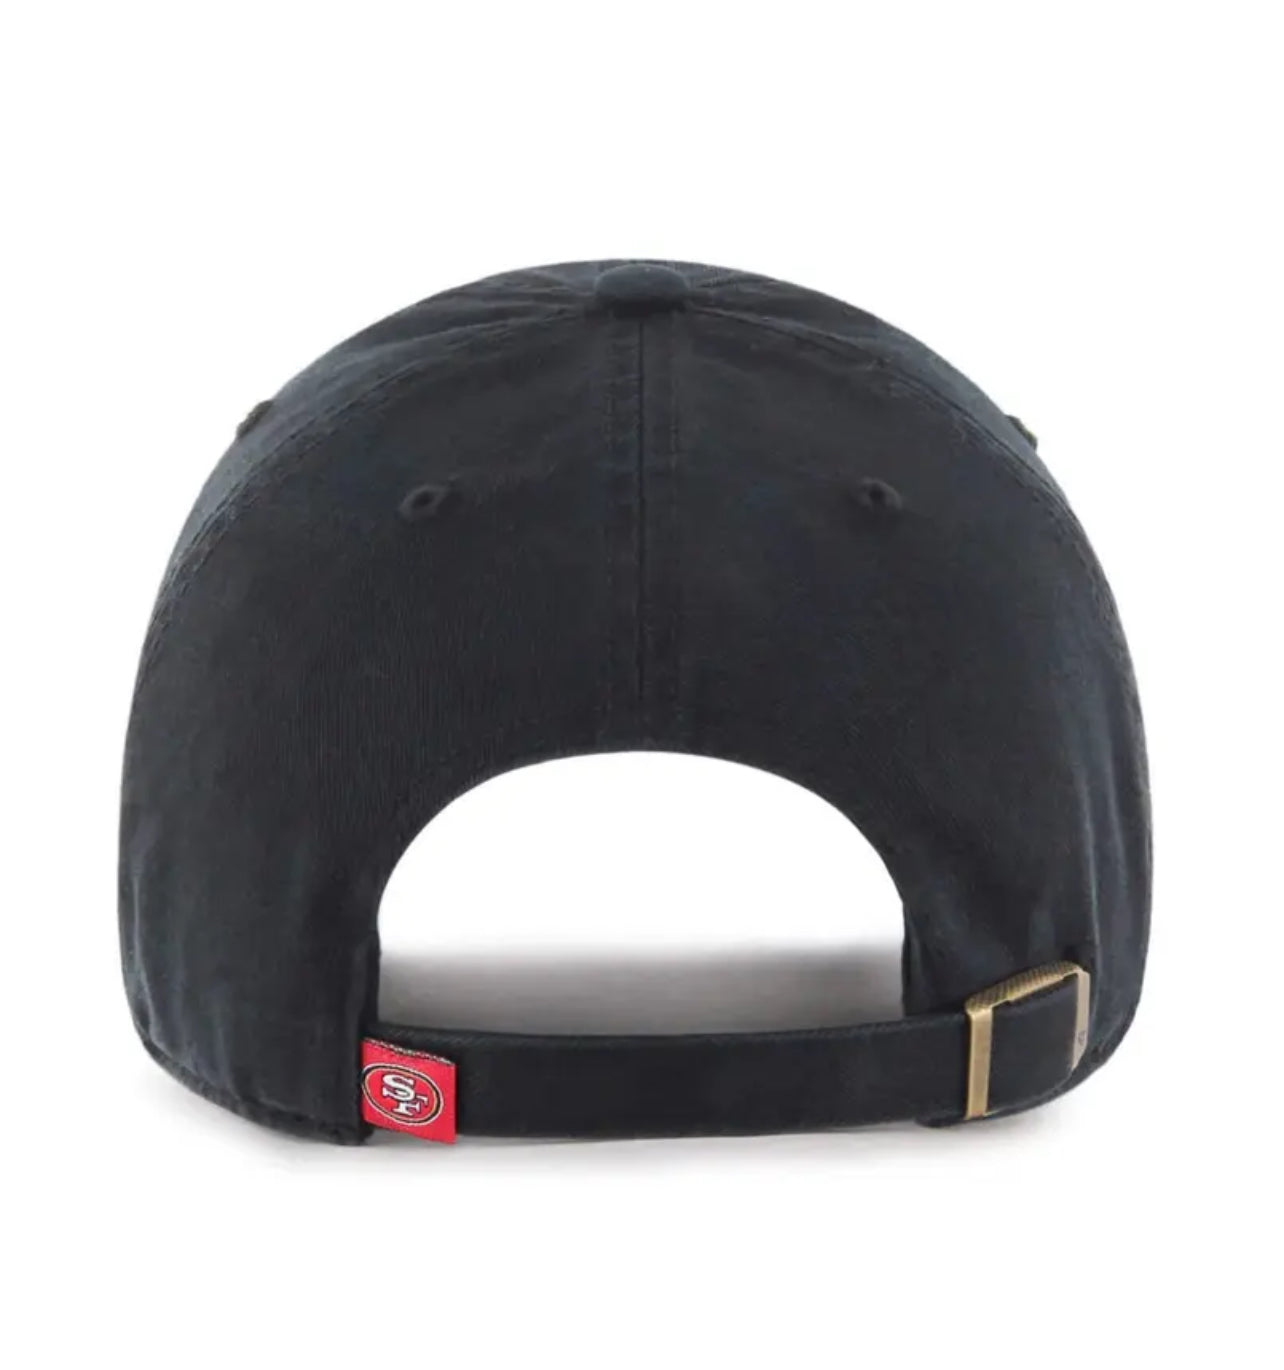 San Francisco 49ers '47 Brand Black Clean Up Adjustable Dad Hat